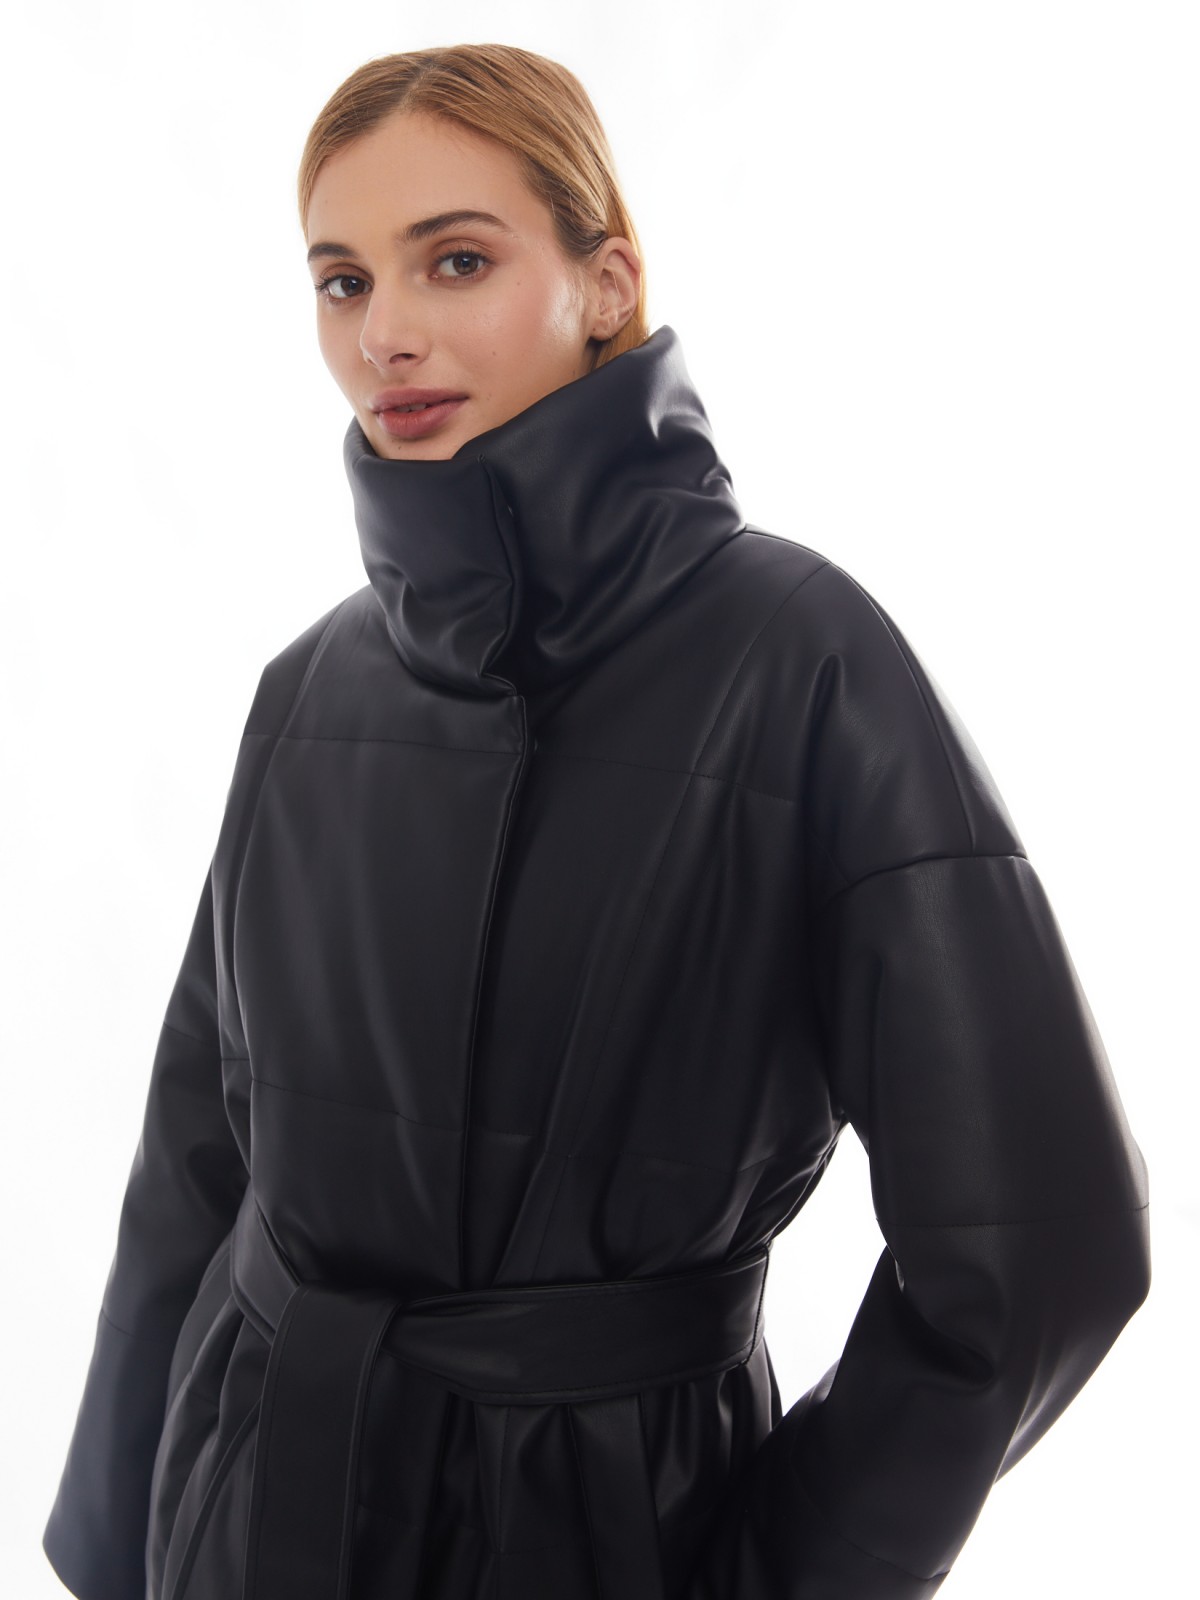 Тёплое пальто из экокожи на синтепоне с воротником-стойкой и поясом zolla 02412522N034, цвет черный, размер XS - фото 4